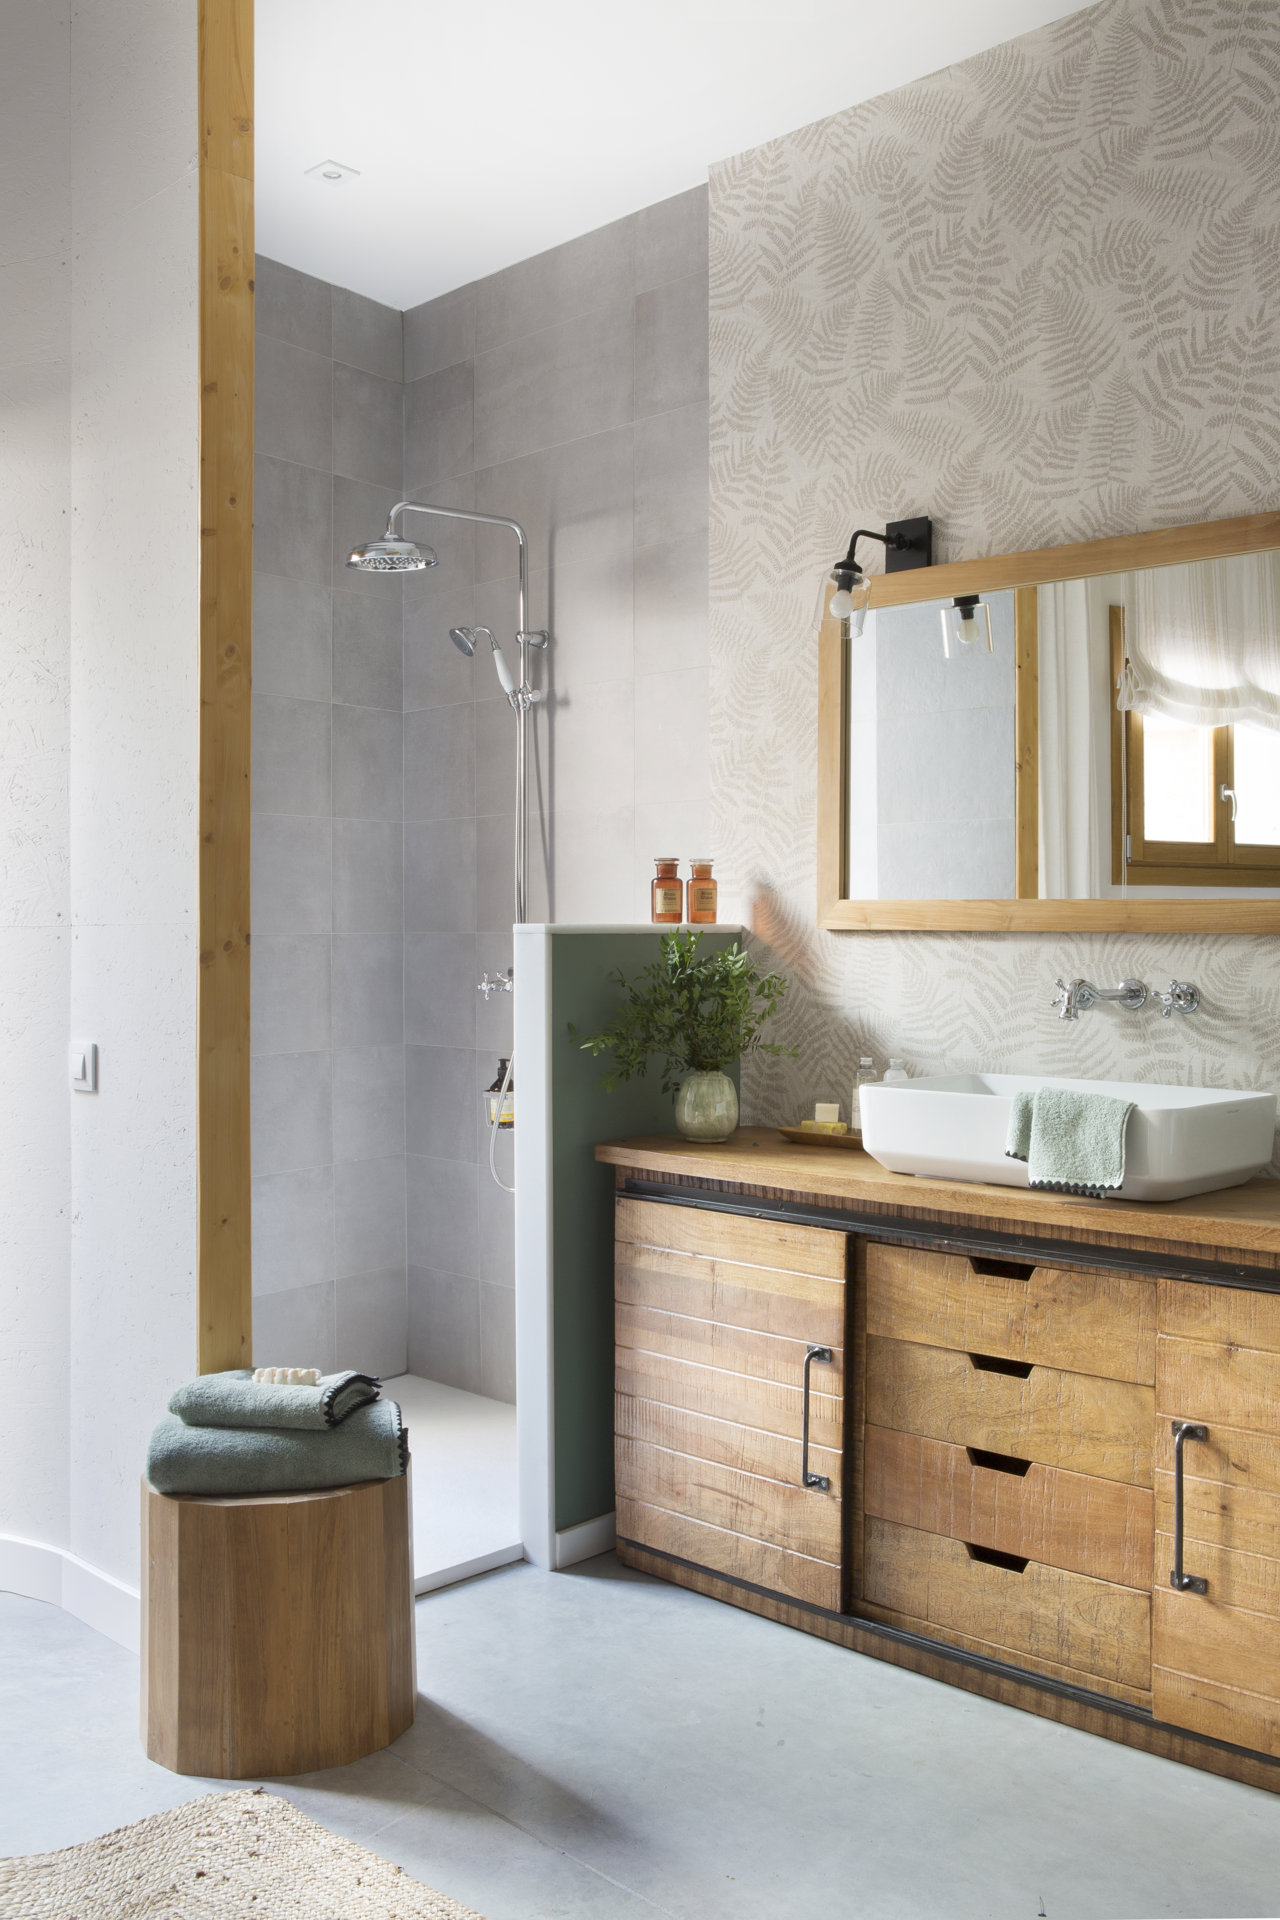 Baño pequeño y abierto al dormitorio con un pequeño murete como alternativa a la mampara dela ducha. Es un diseño de la interiorista Pia Capdevila. 